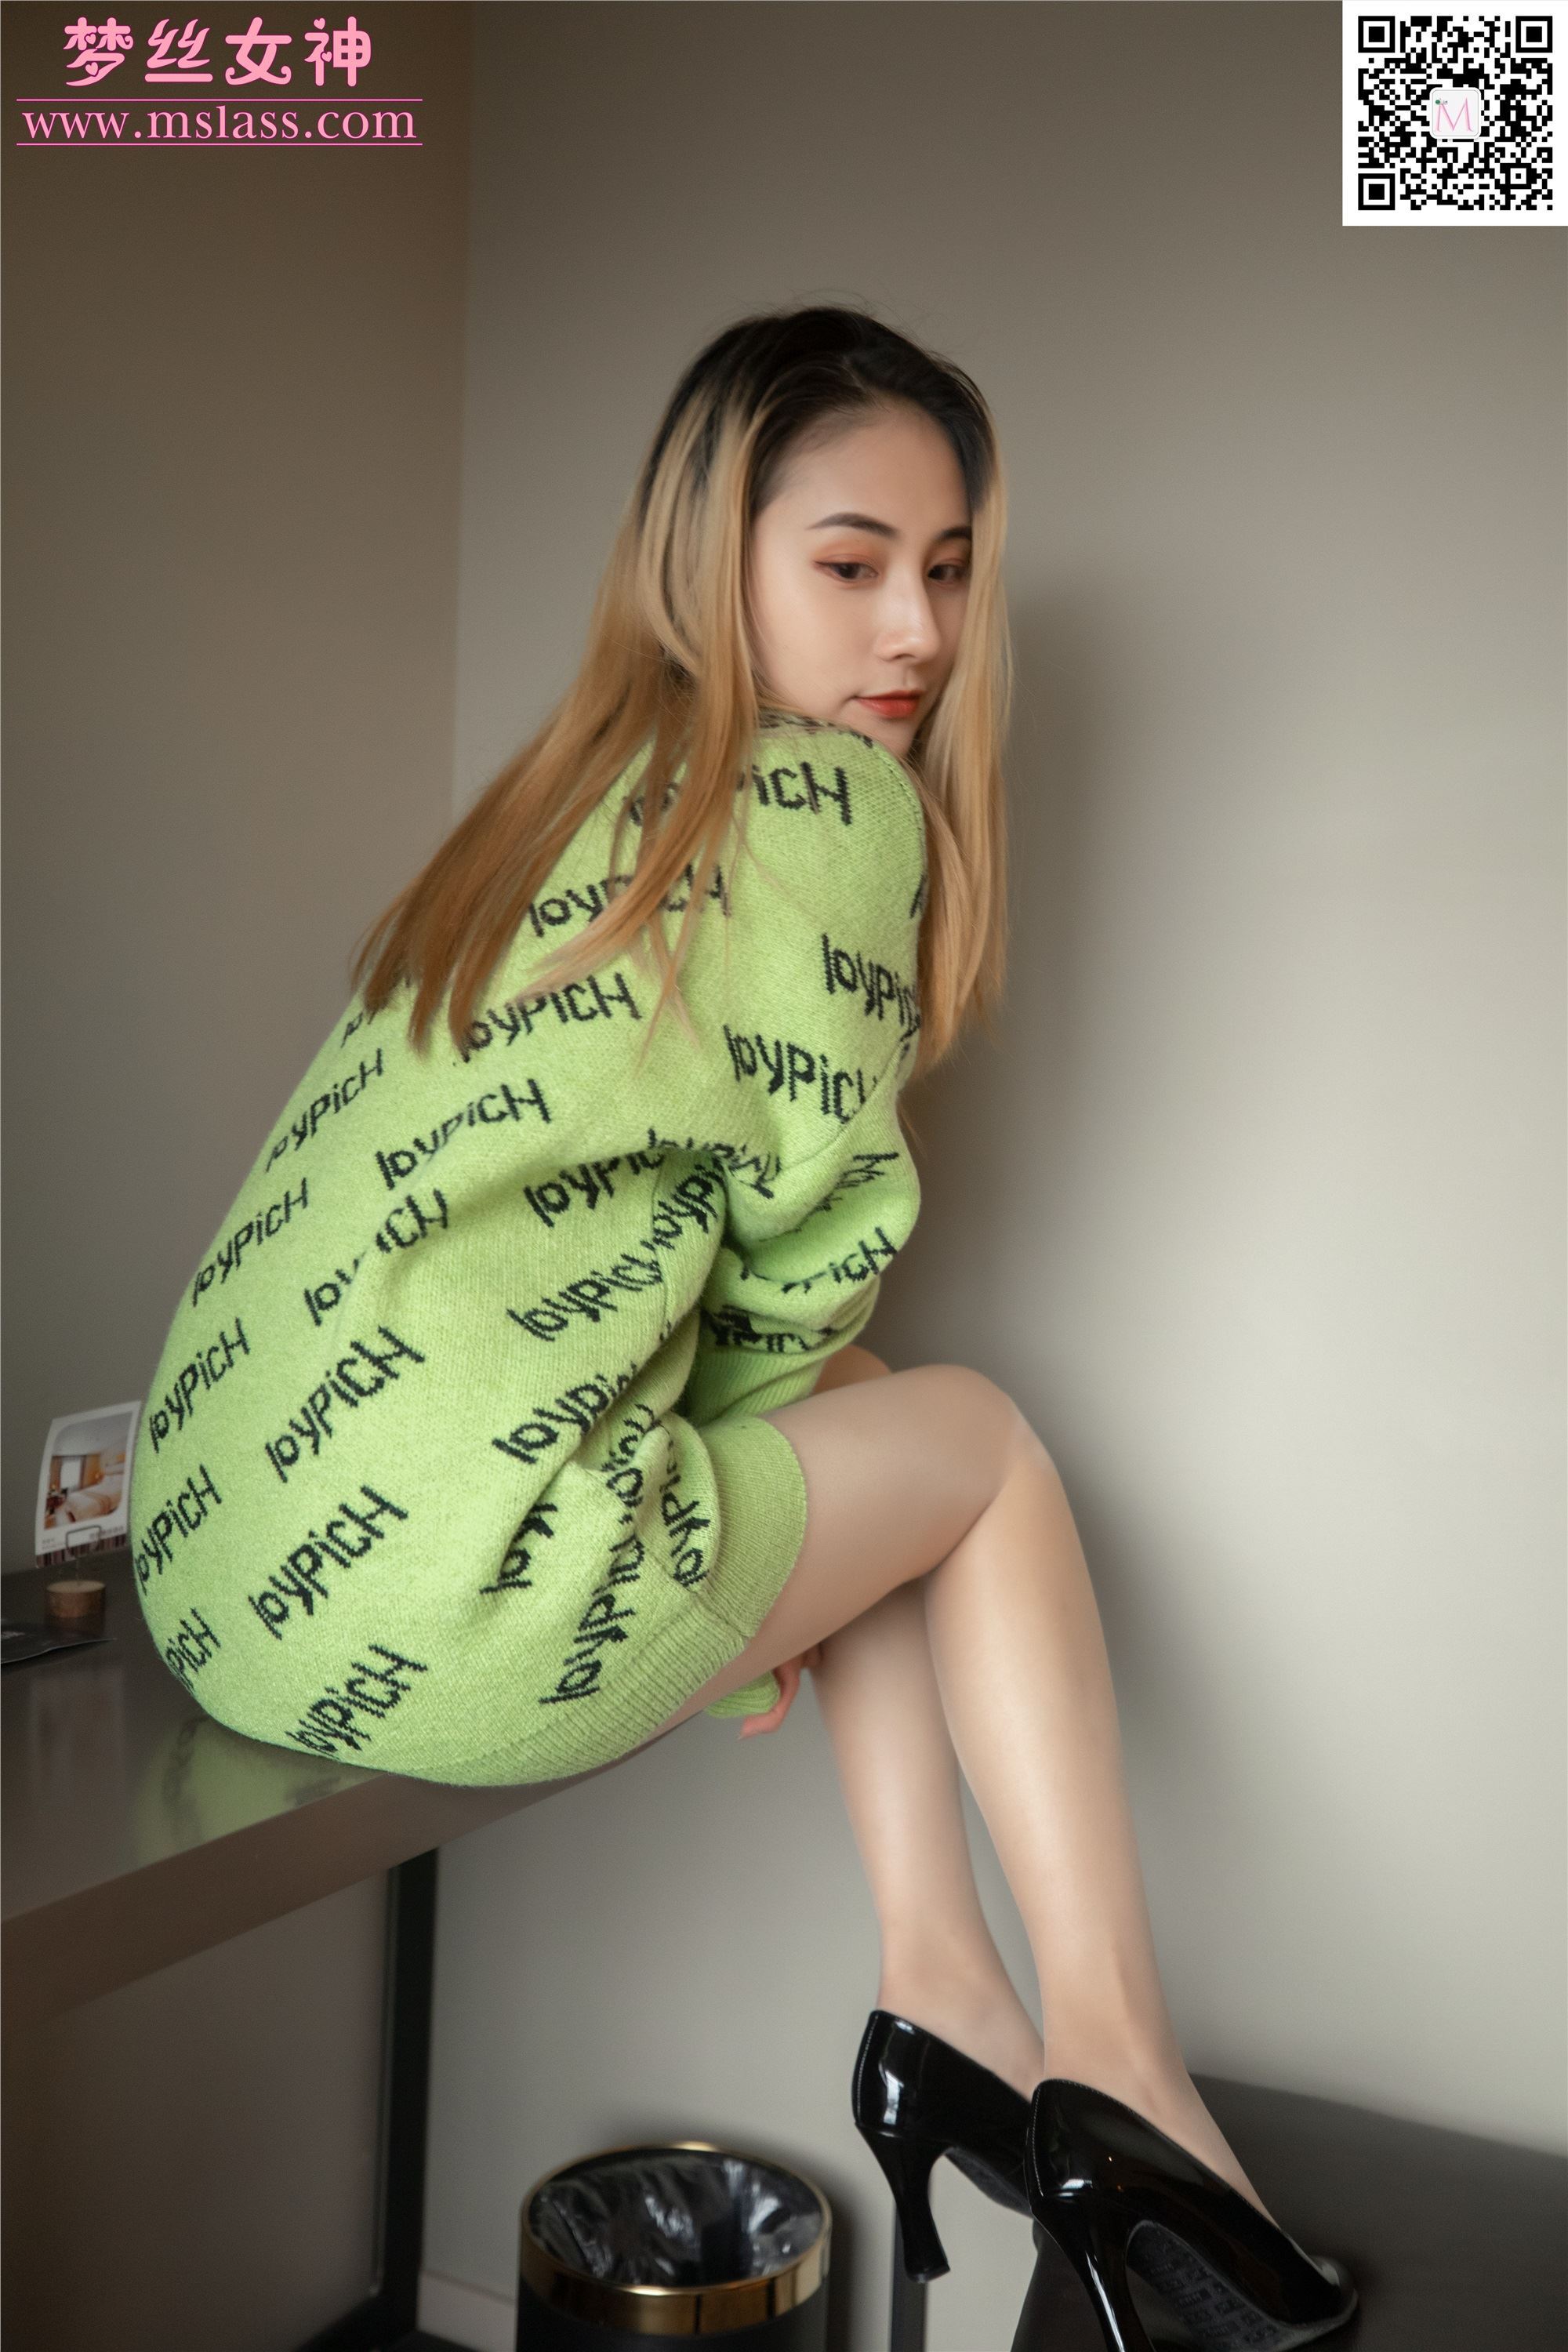 Mslass dream goddess 2019-11-27 vol.075 Xiao yun'er likes green clothes